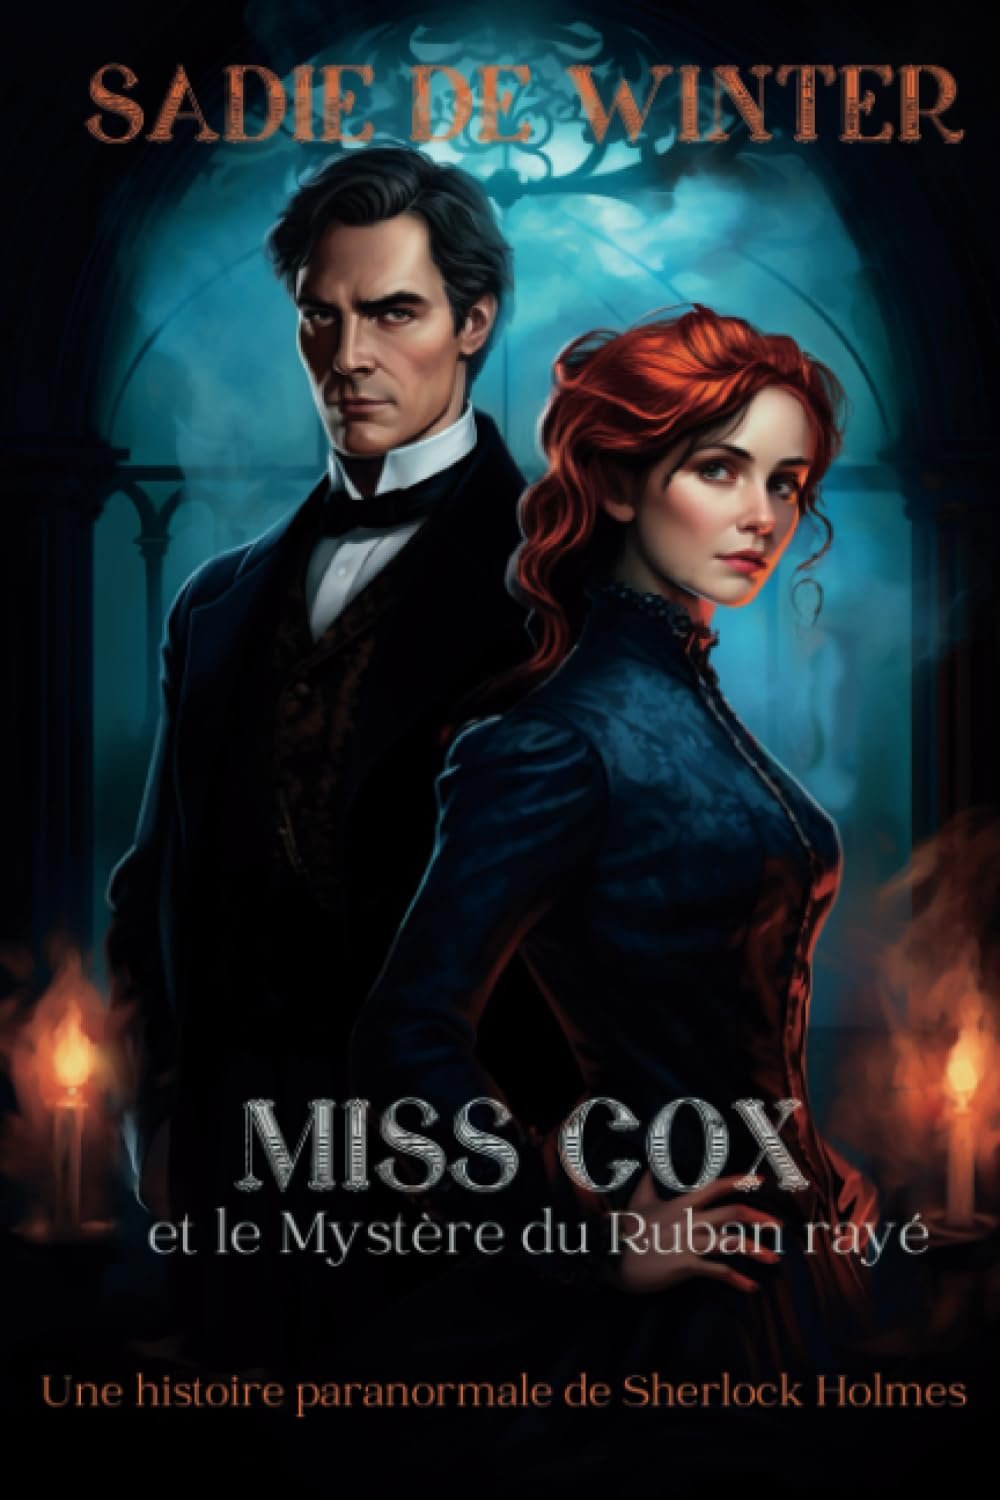 Sadie De Winter - Miss Cox et le Mystère du Ruban rayé: Une histoire paranormale de Sherlock Holmes